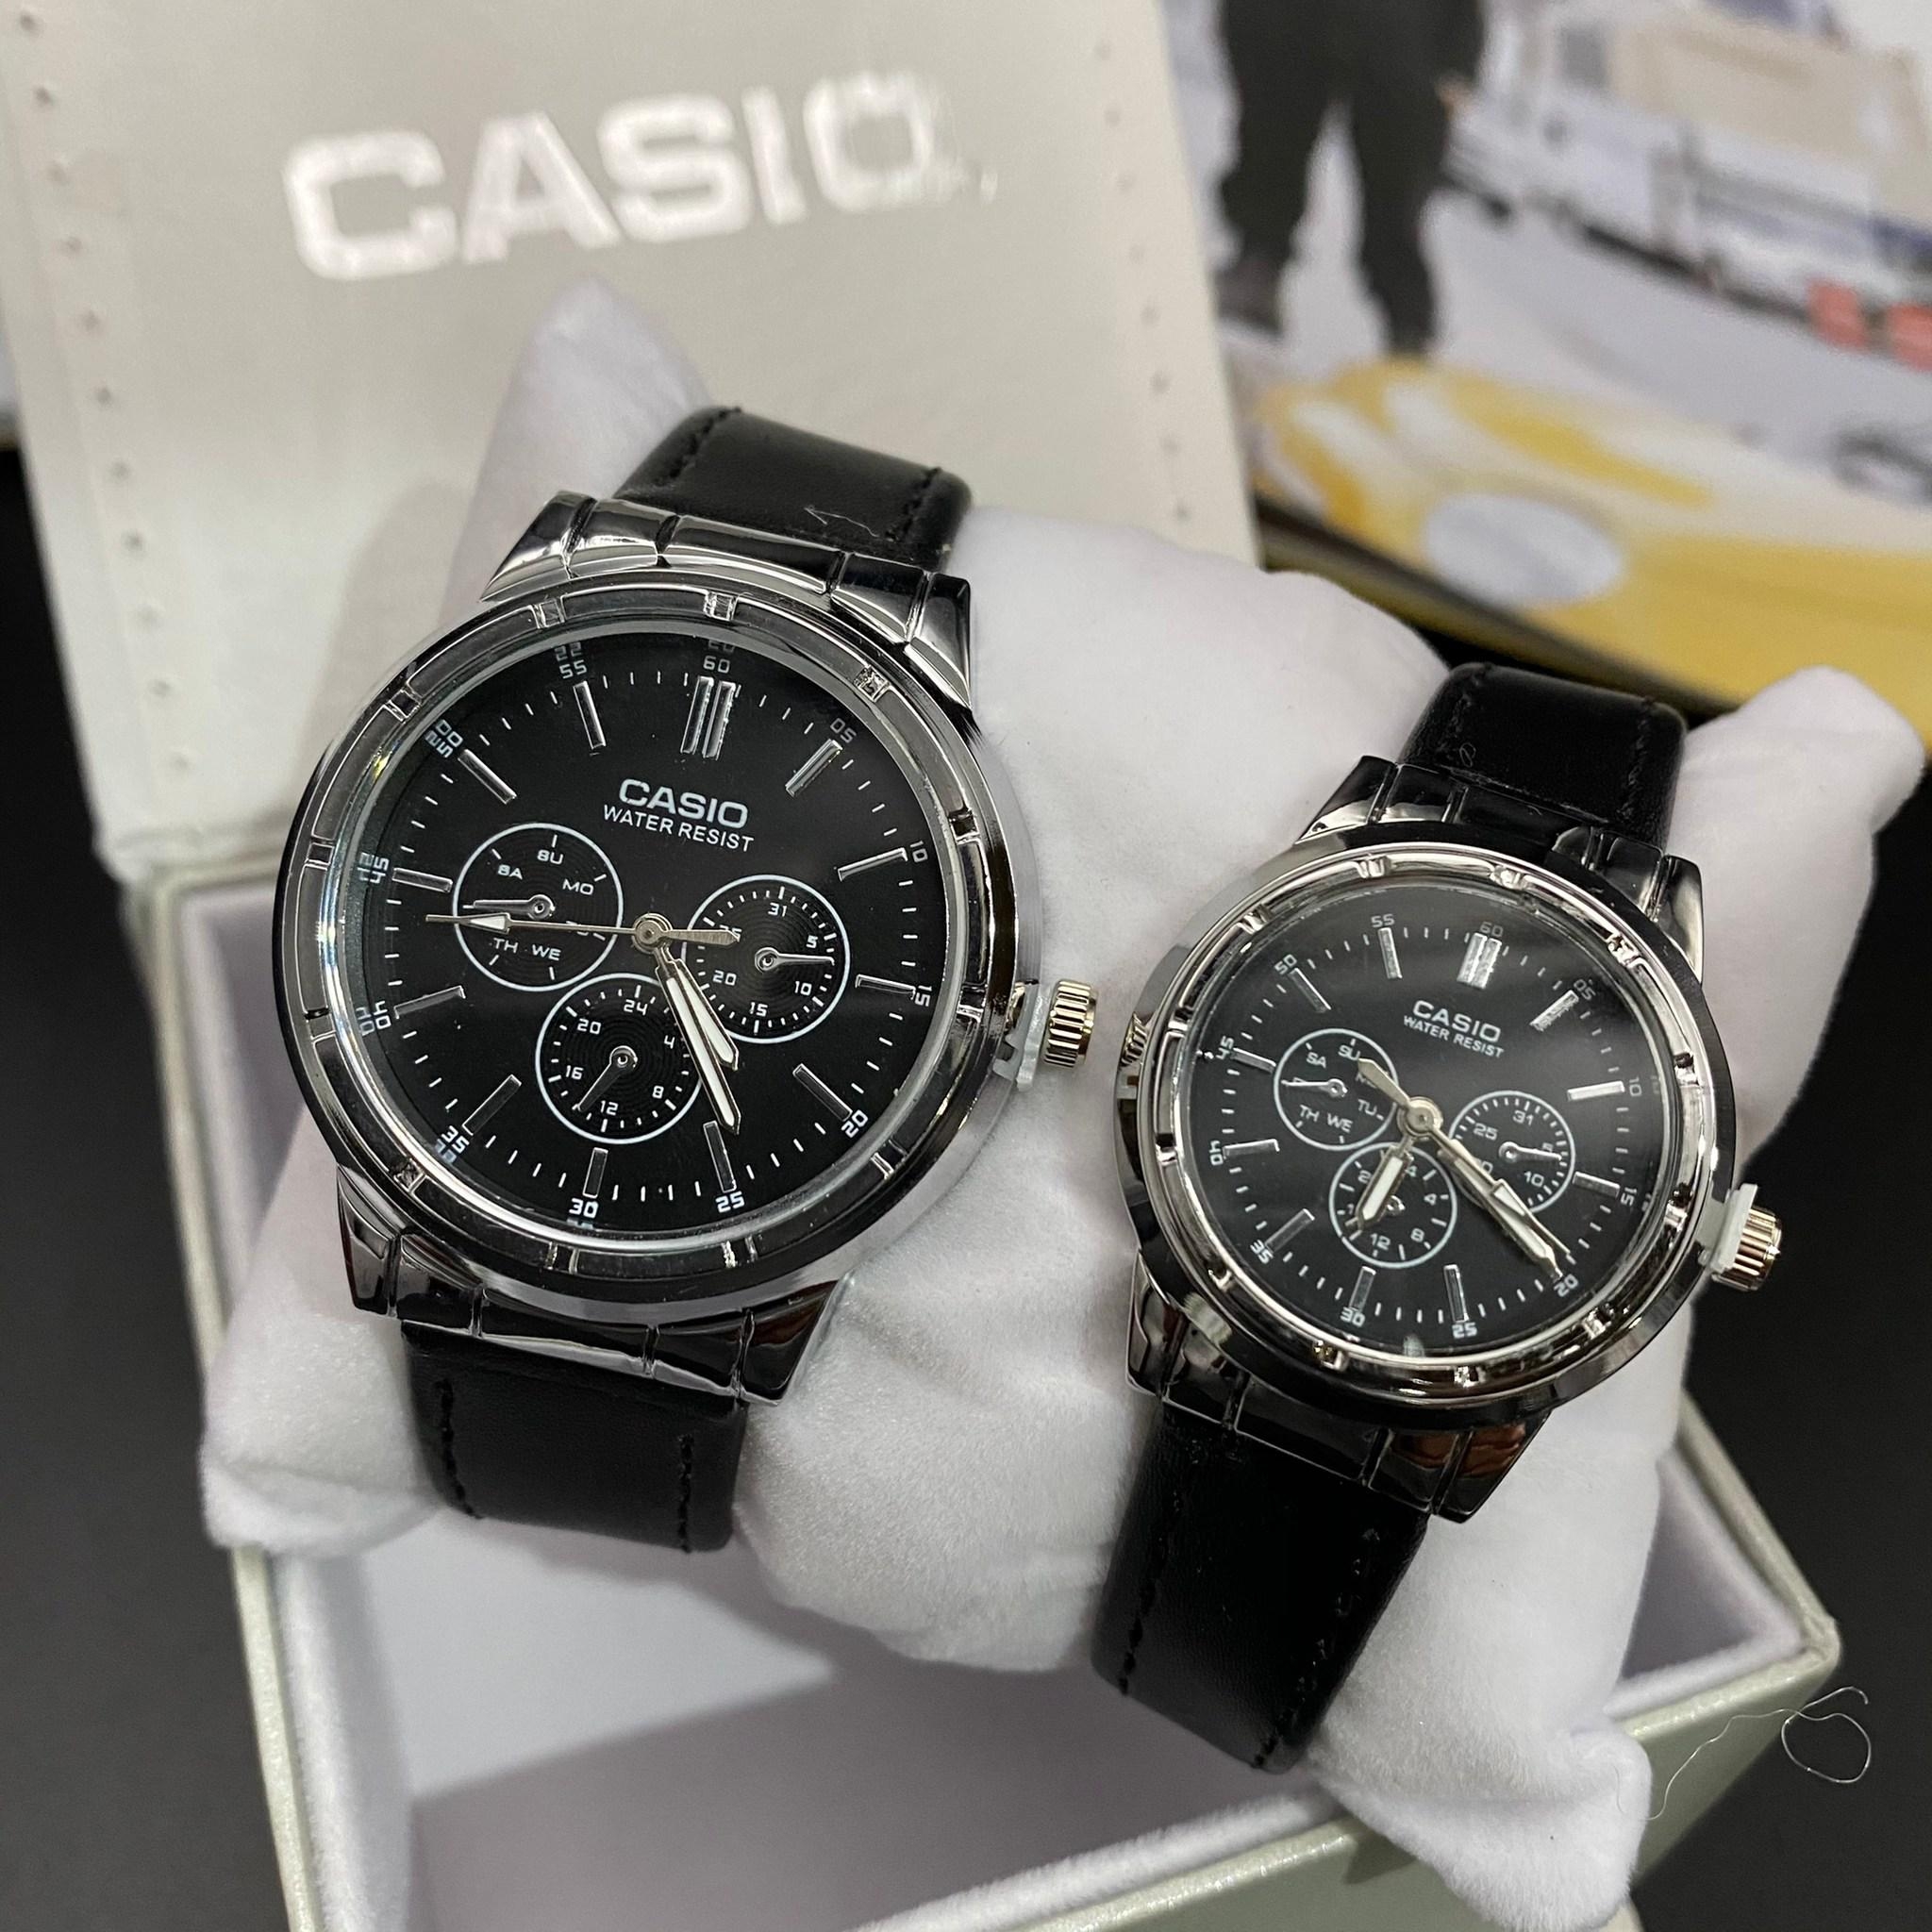 นาฬิกา Casio สายหนัง คู่รัก หน้าสามวงล่าง ขอบเงิน/ขอบทอง แถมผ้าเช็ด+เซ็ตเวลา